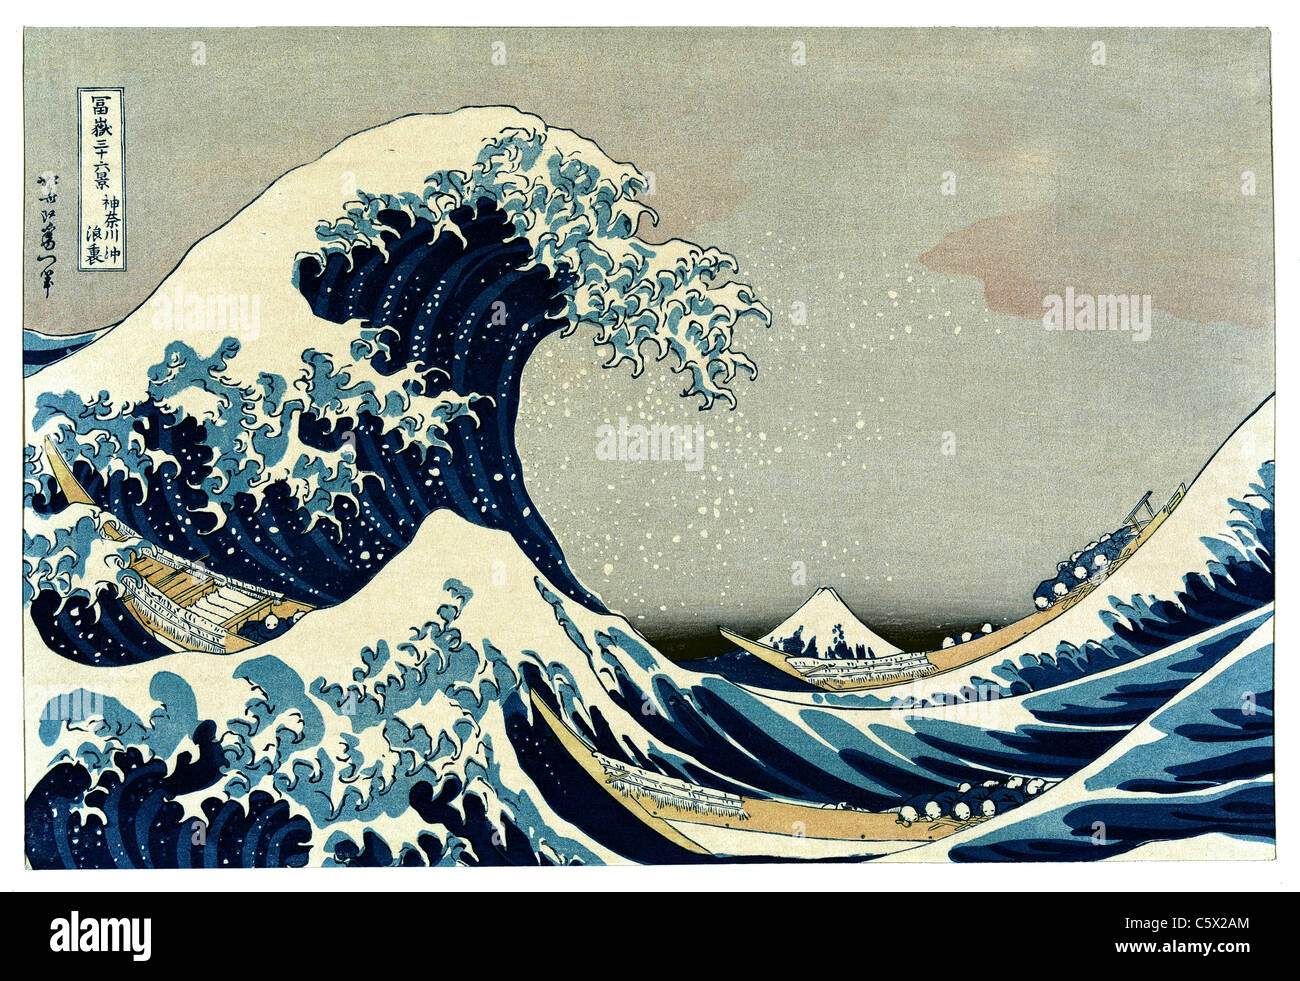 La gran ola de kanagawa fotografías e imágenes de alta resolución - Alamy